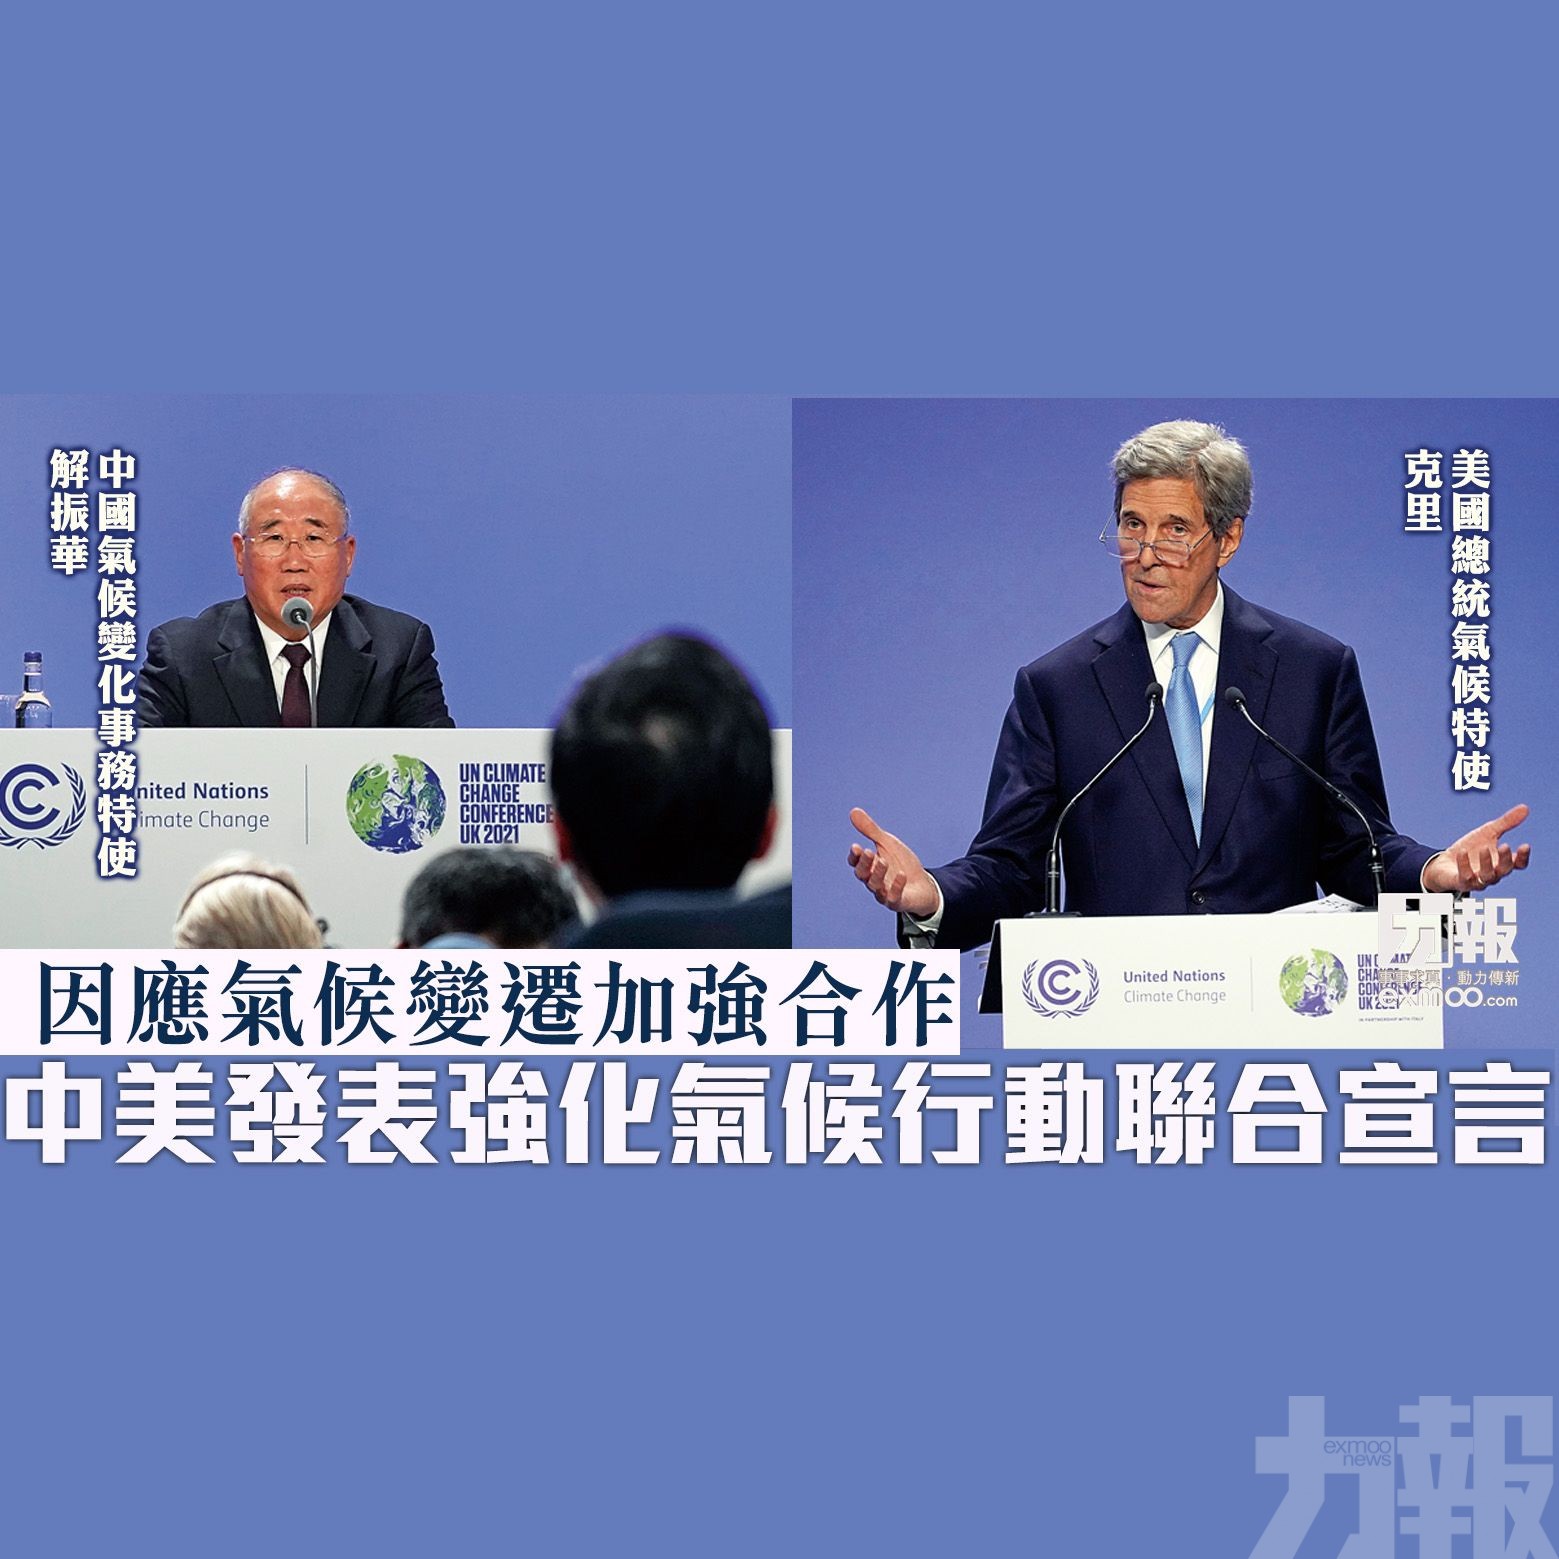 中美發表強化氣候行動聯合宣言